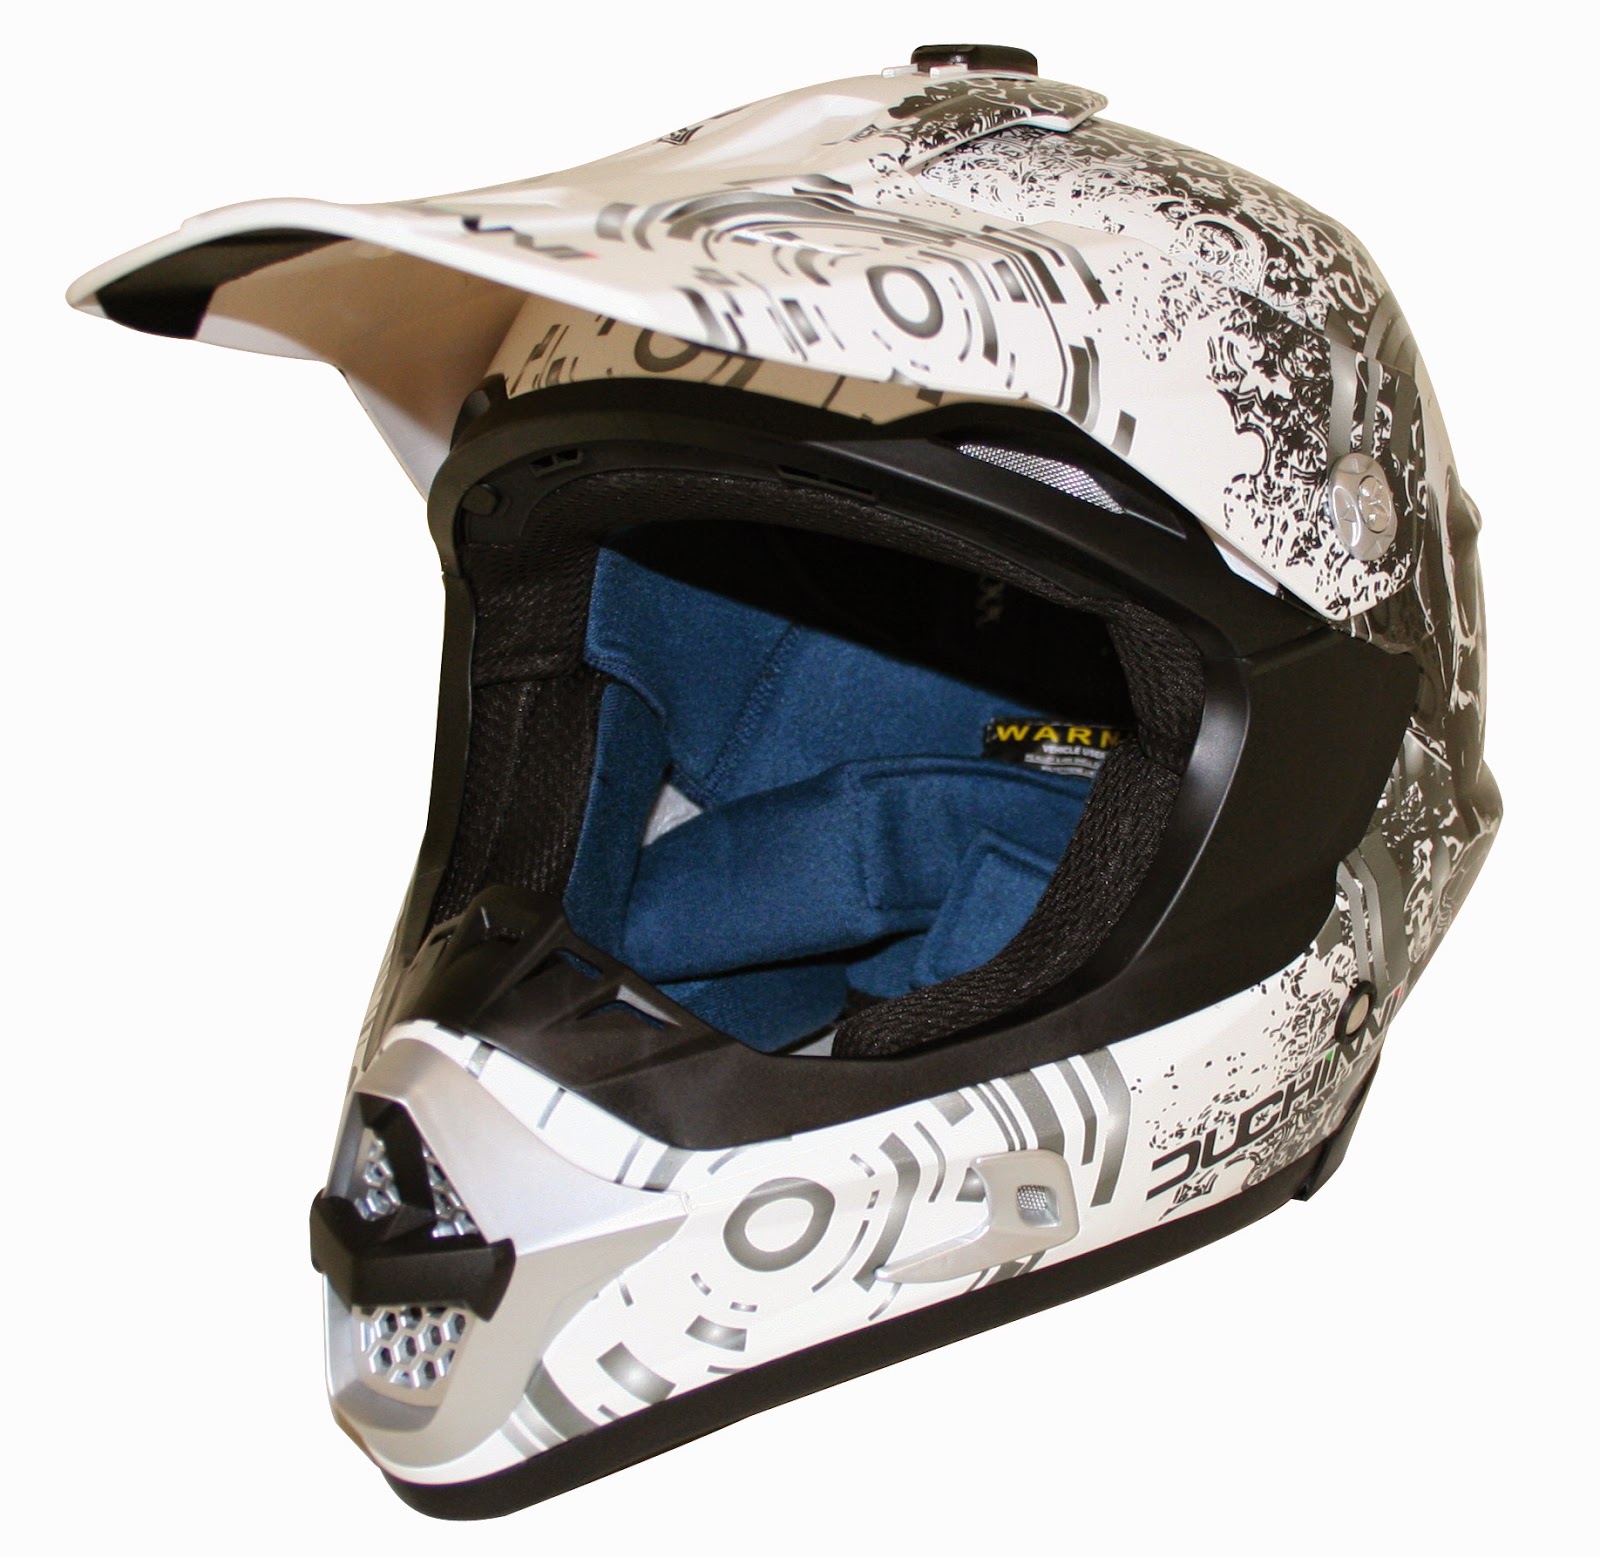 New: Duchinni D305 Moto X helmet